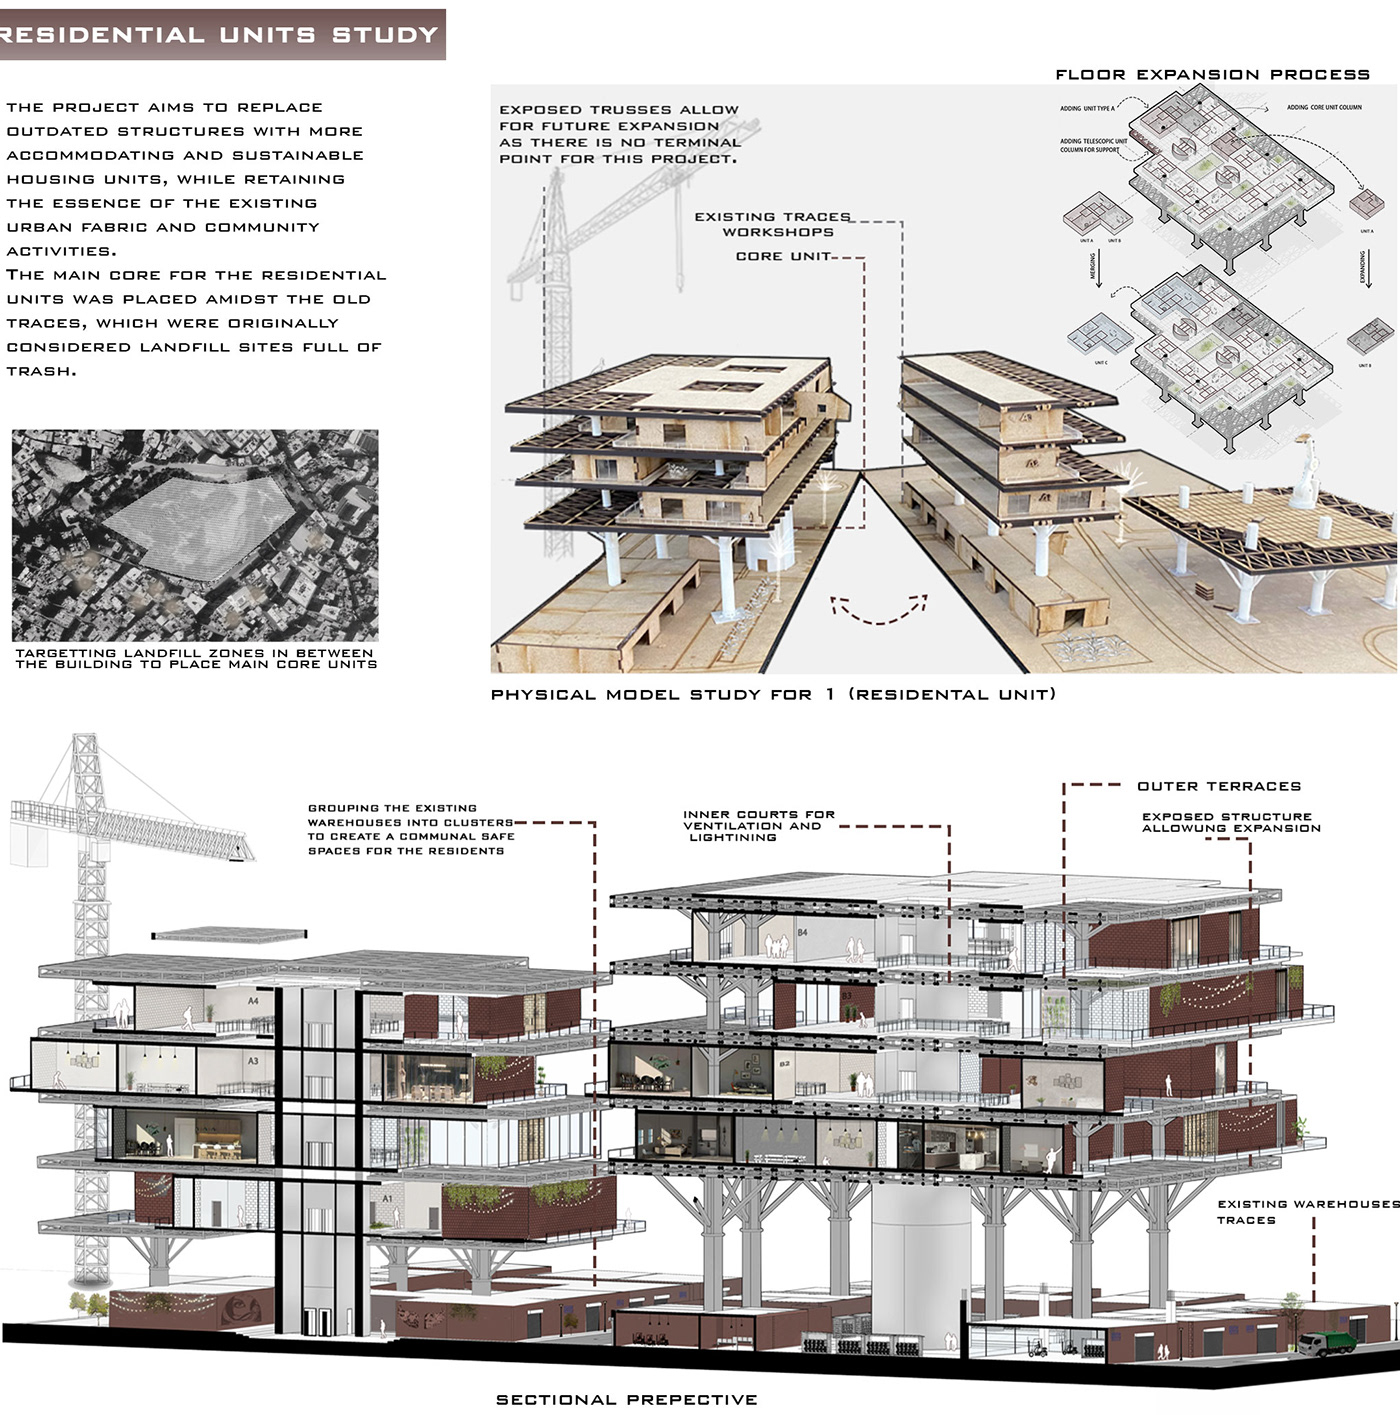 Flexibility architecture slums visulaization Render Urban Design parametric architecture Landscape parametric design